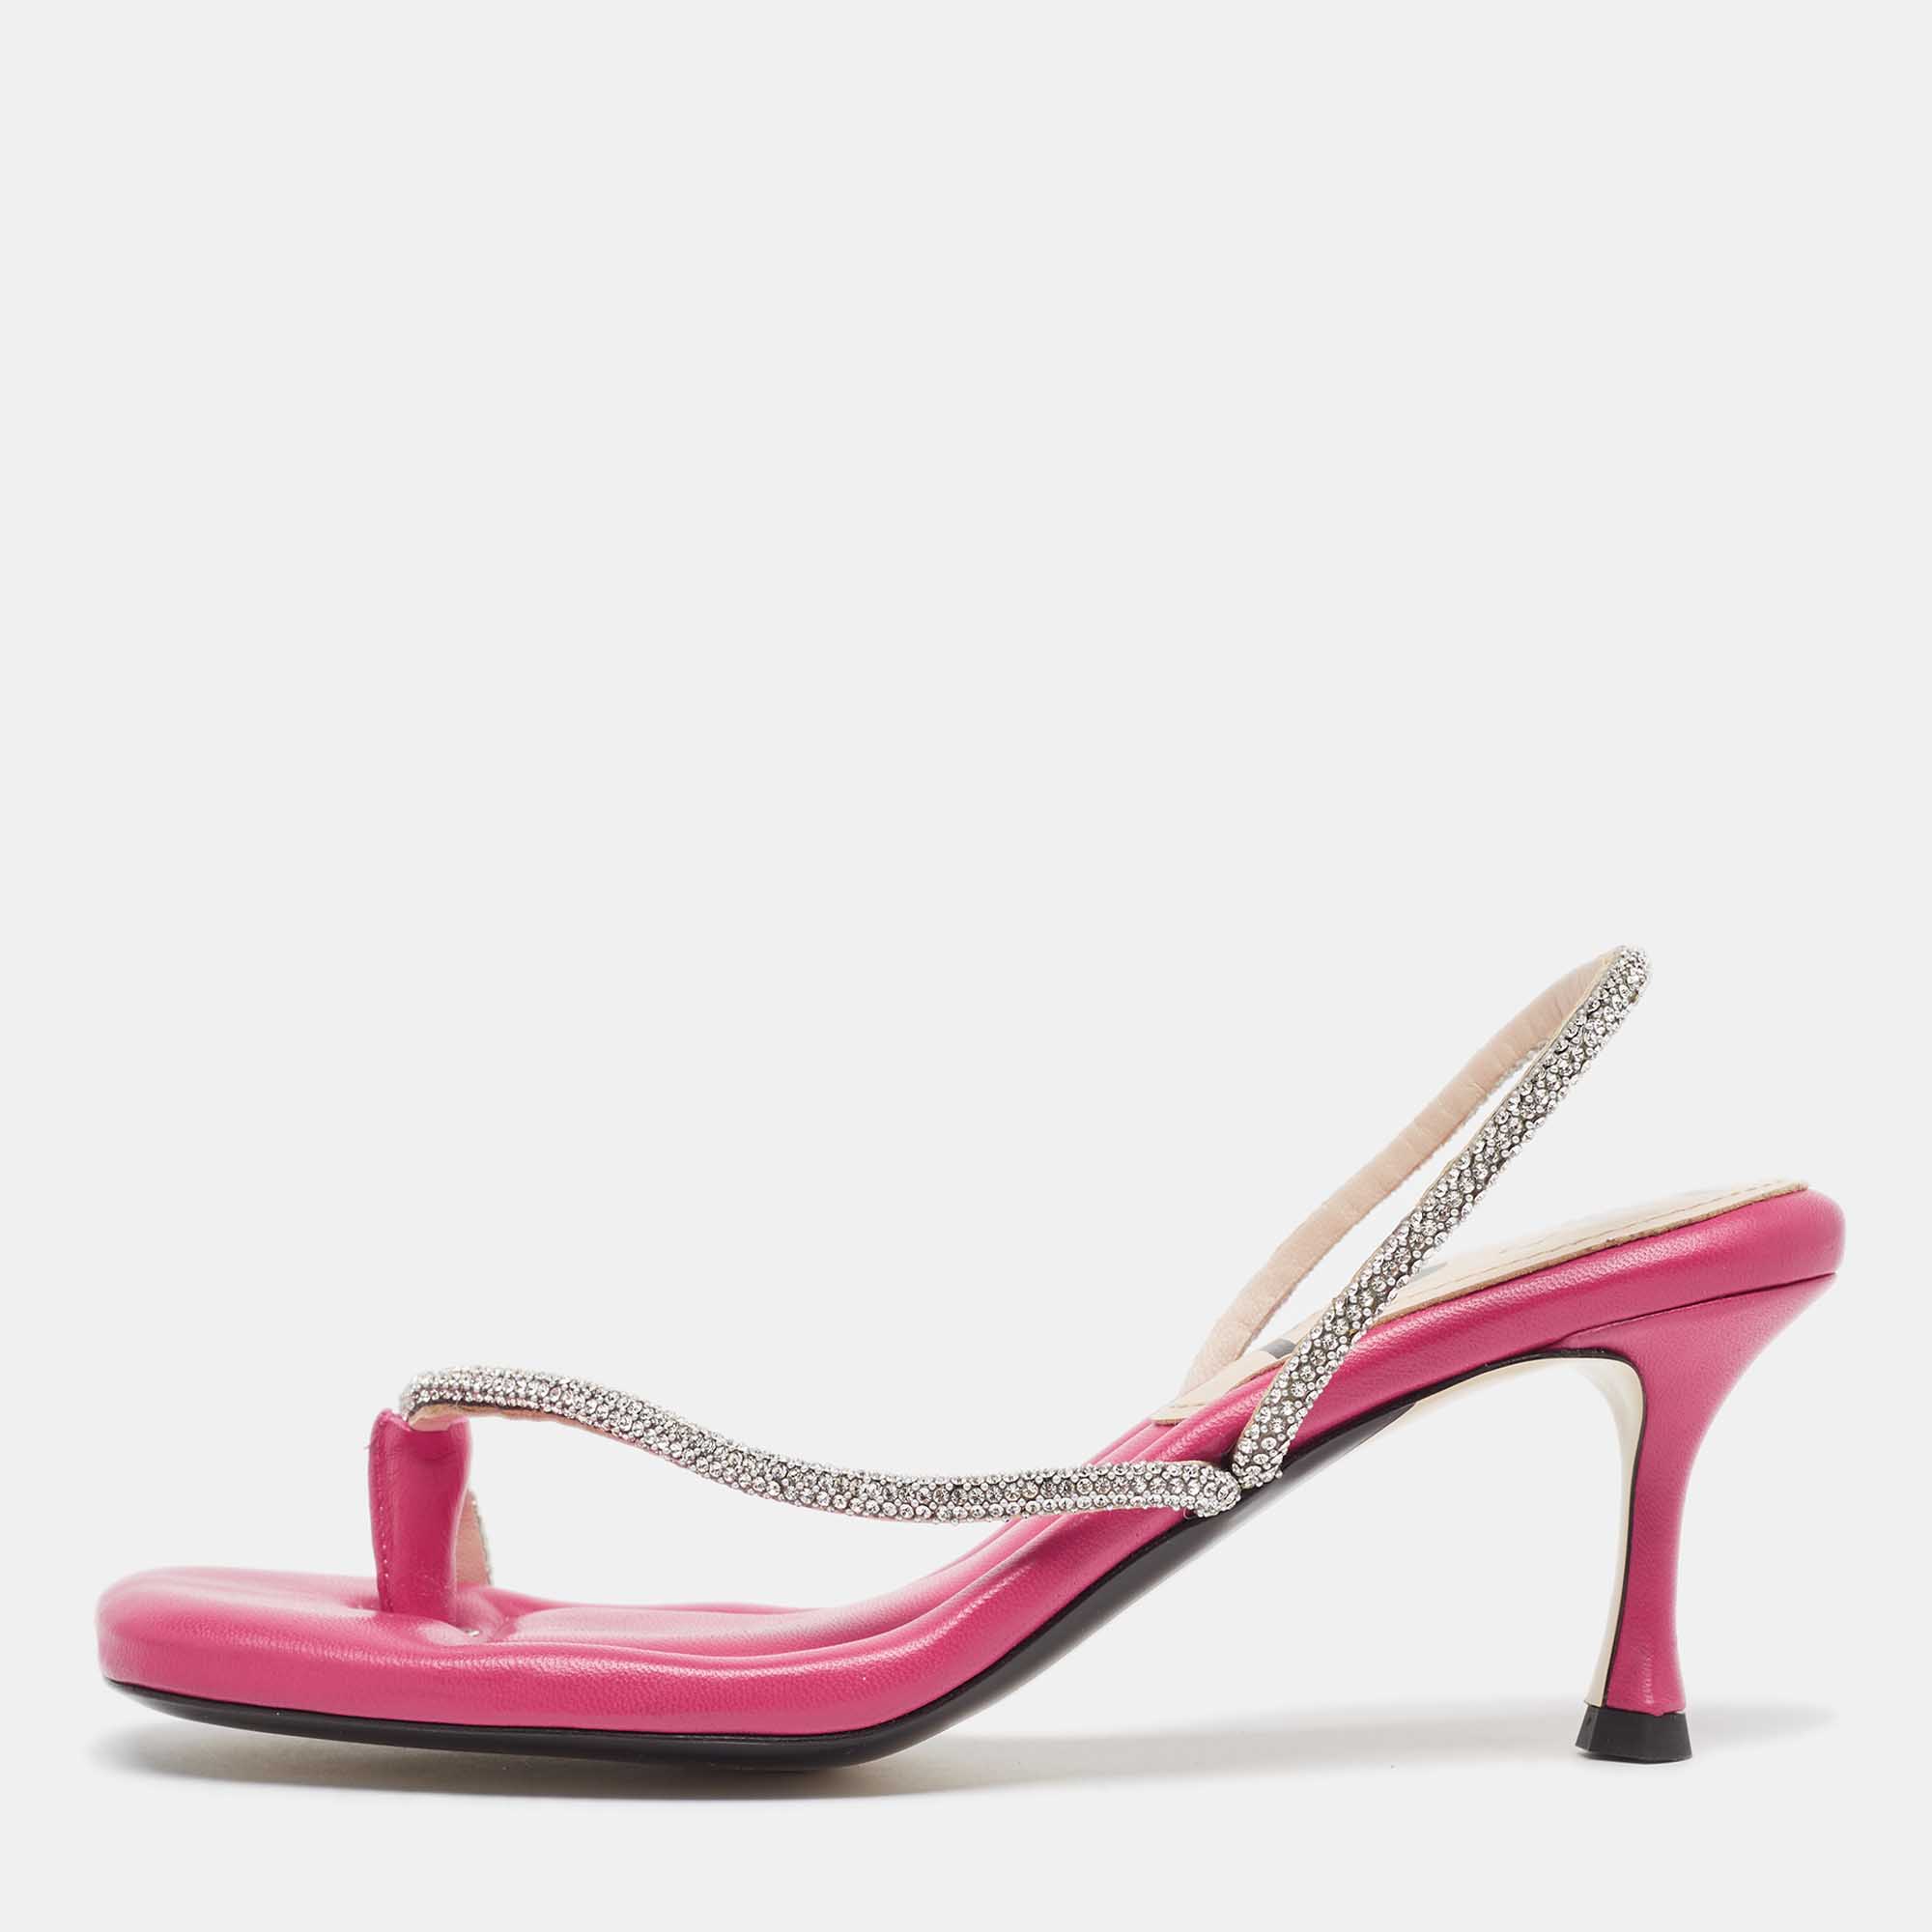 N21 pink leather crystals embellished slingback sandals size 38